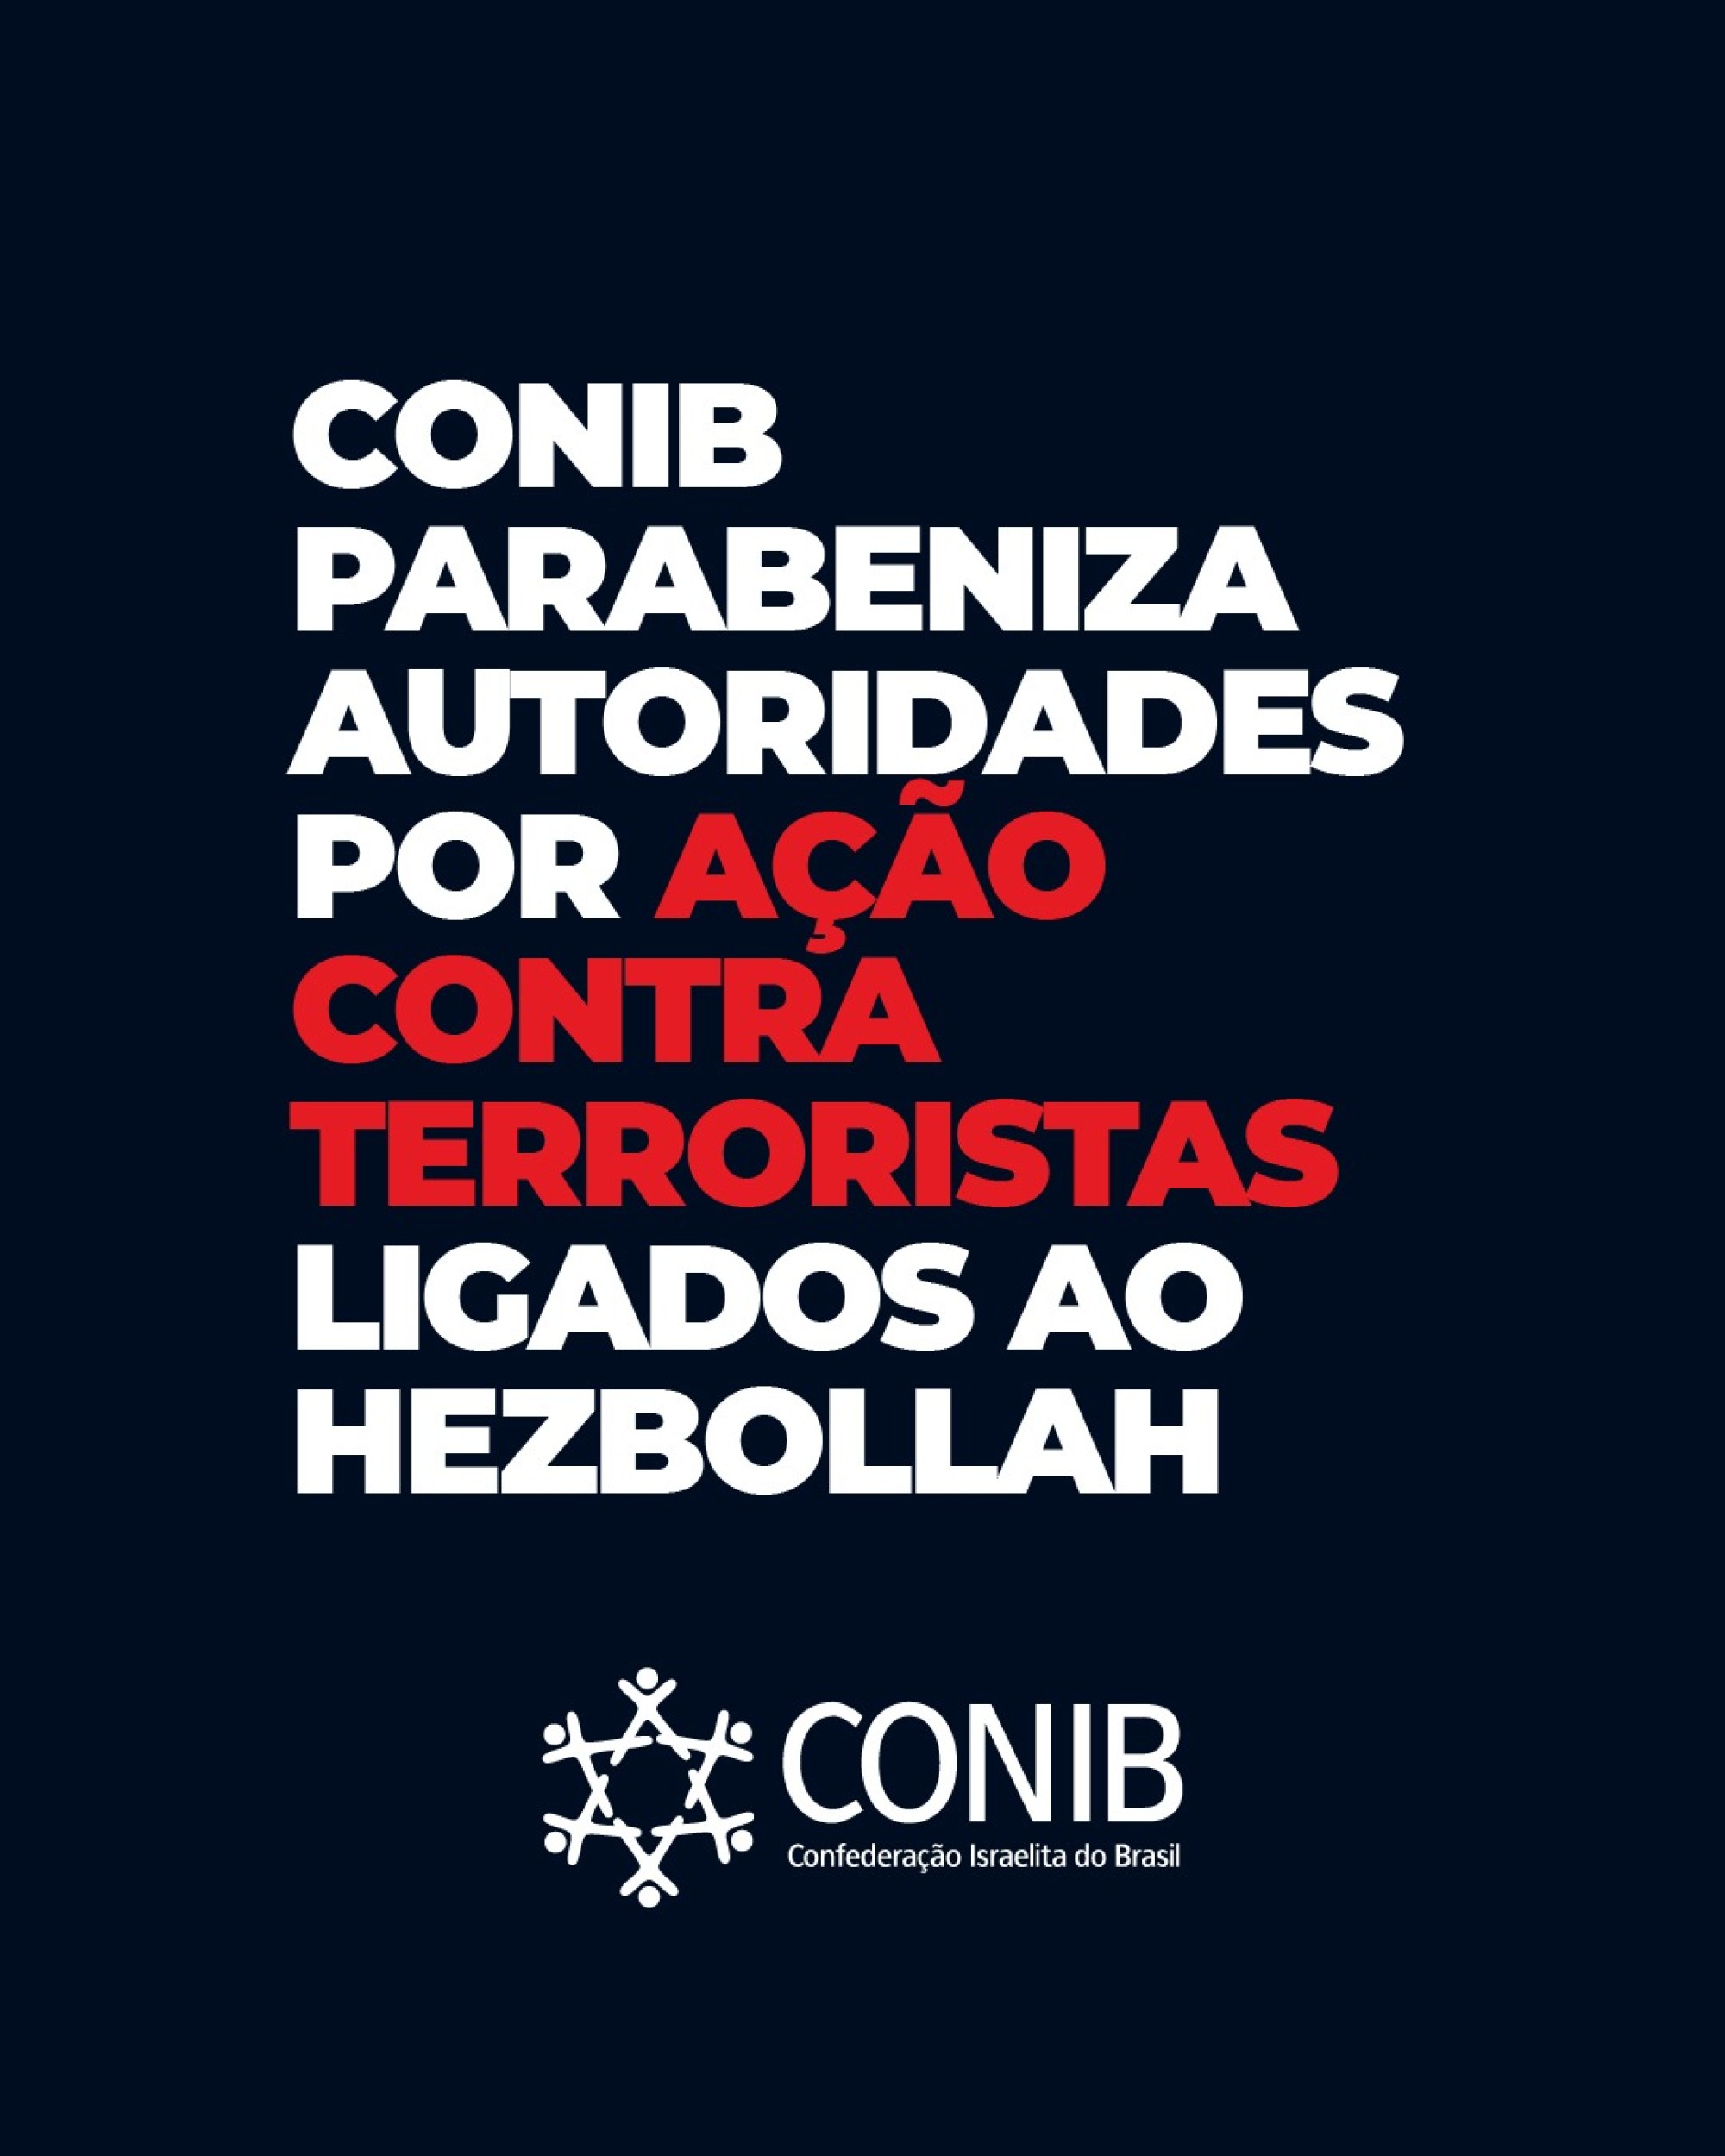 CONIB parabeniza autoridades por ação contra terroristas ligados ao Hezbollah - Fundada em 1948, a CONIB – Confederação Israelita do Brasil é o órgão de representação e coordenação política da comunidade judaica brasileira. 